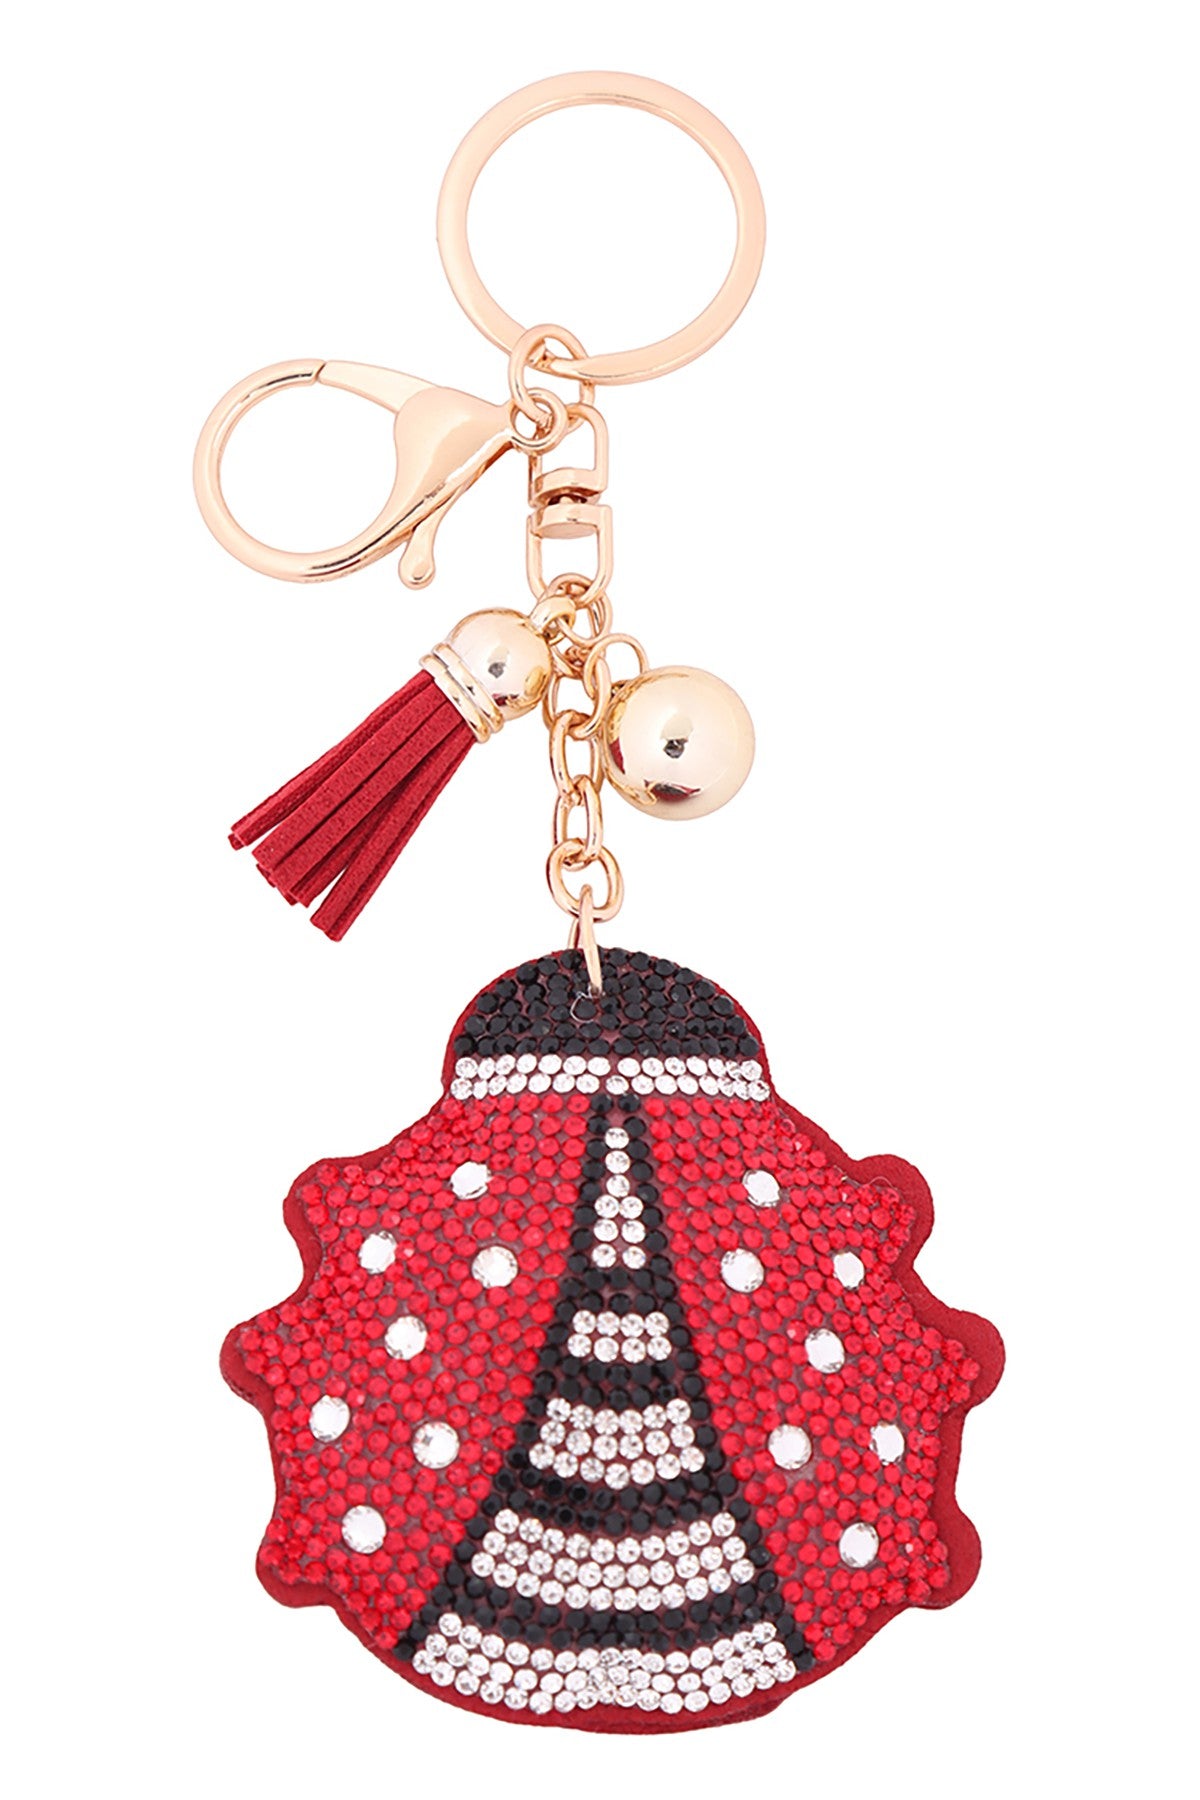 Ladybug Crystal Puffy Keychain Purse Charm